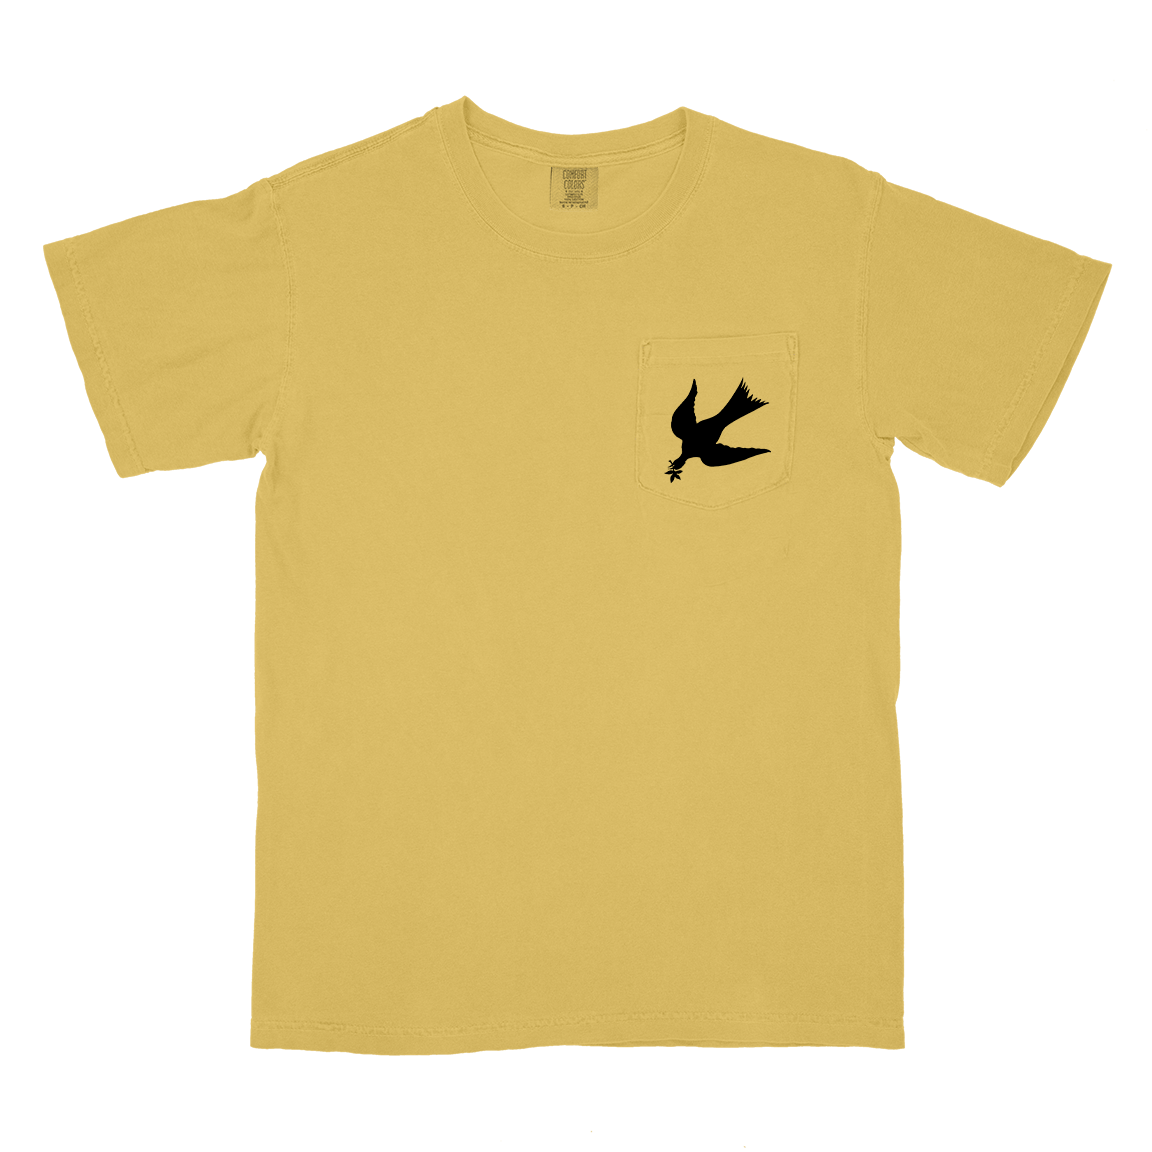 Modern Life Is War "Fallen Dove" Butter Premium Pocket T-Shirt